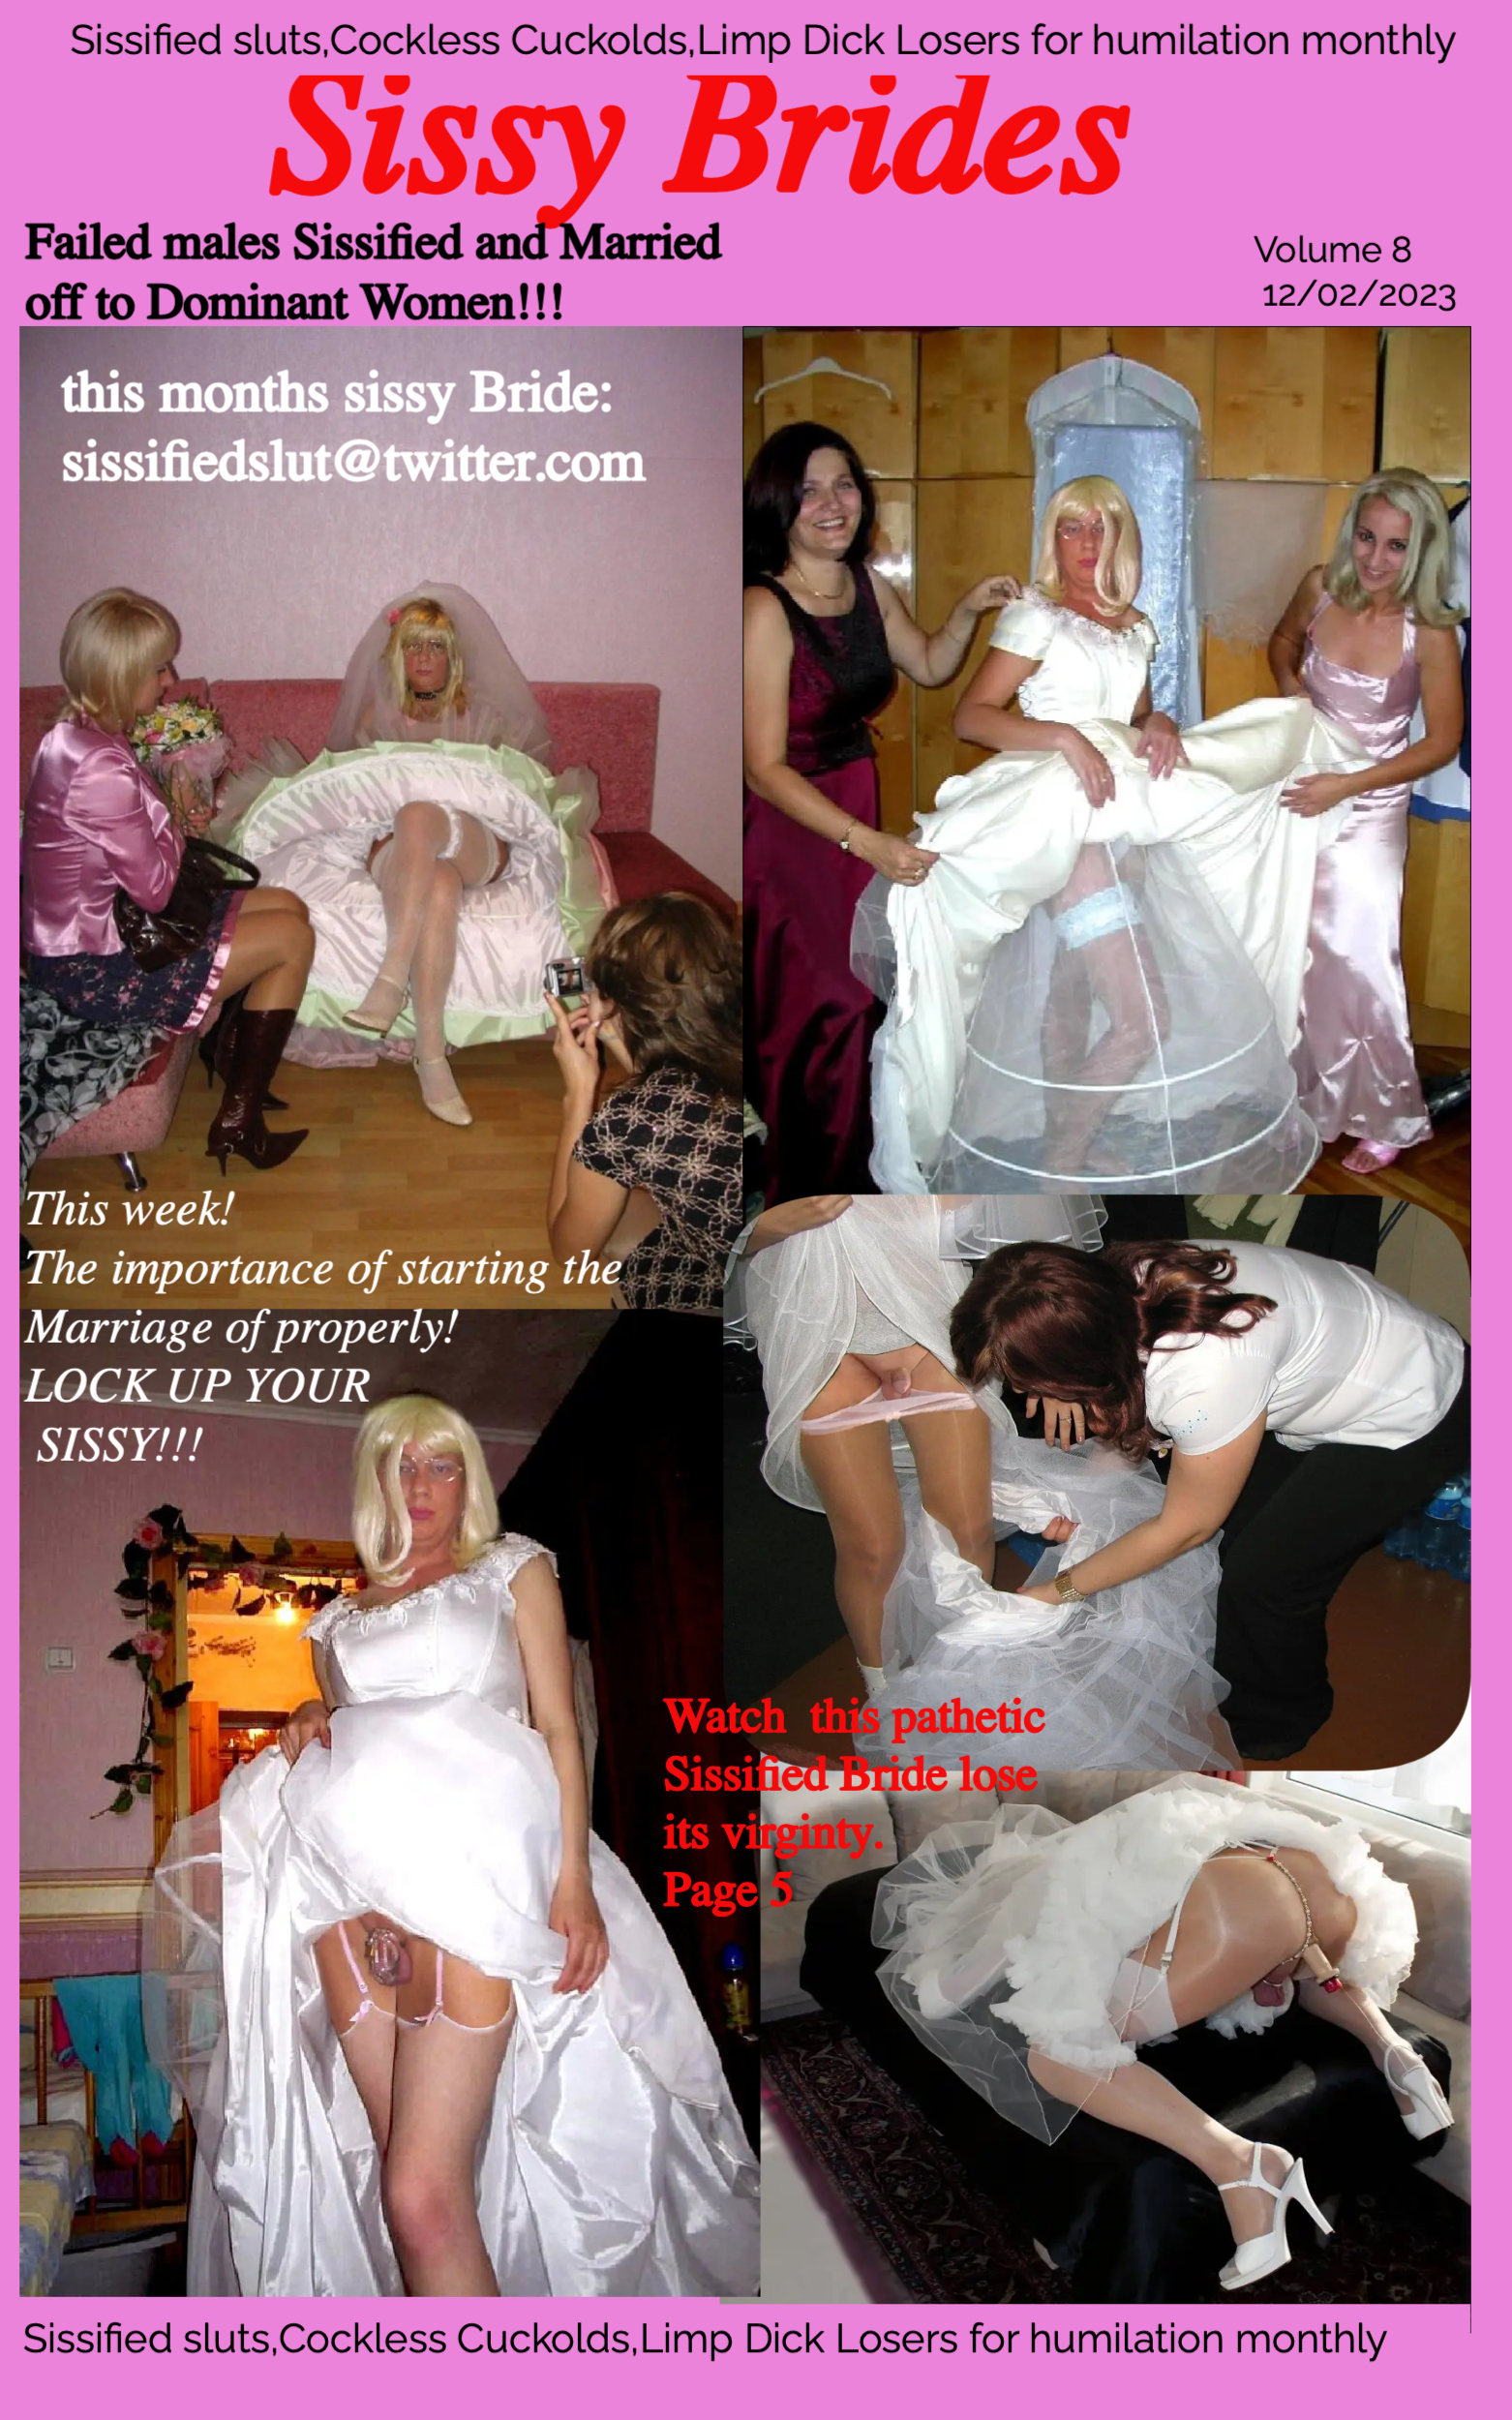 Sissy Brides Magazine copy 6.jpg